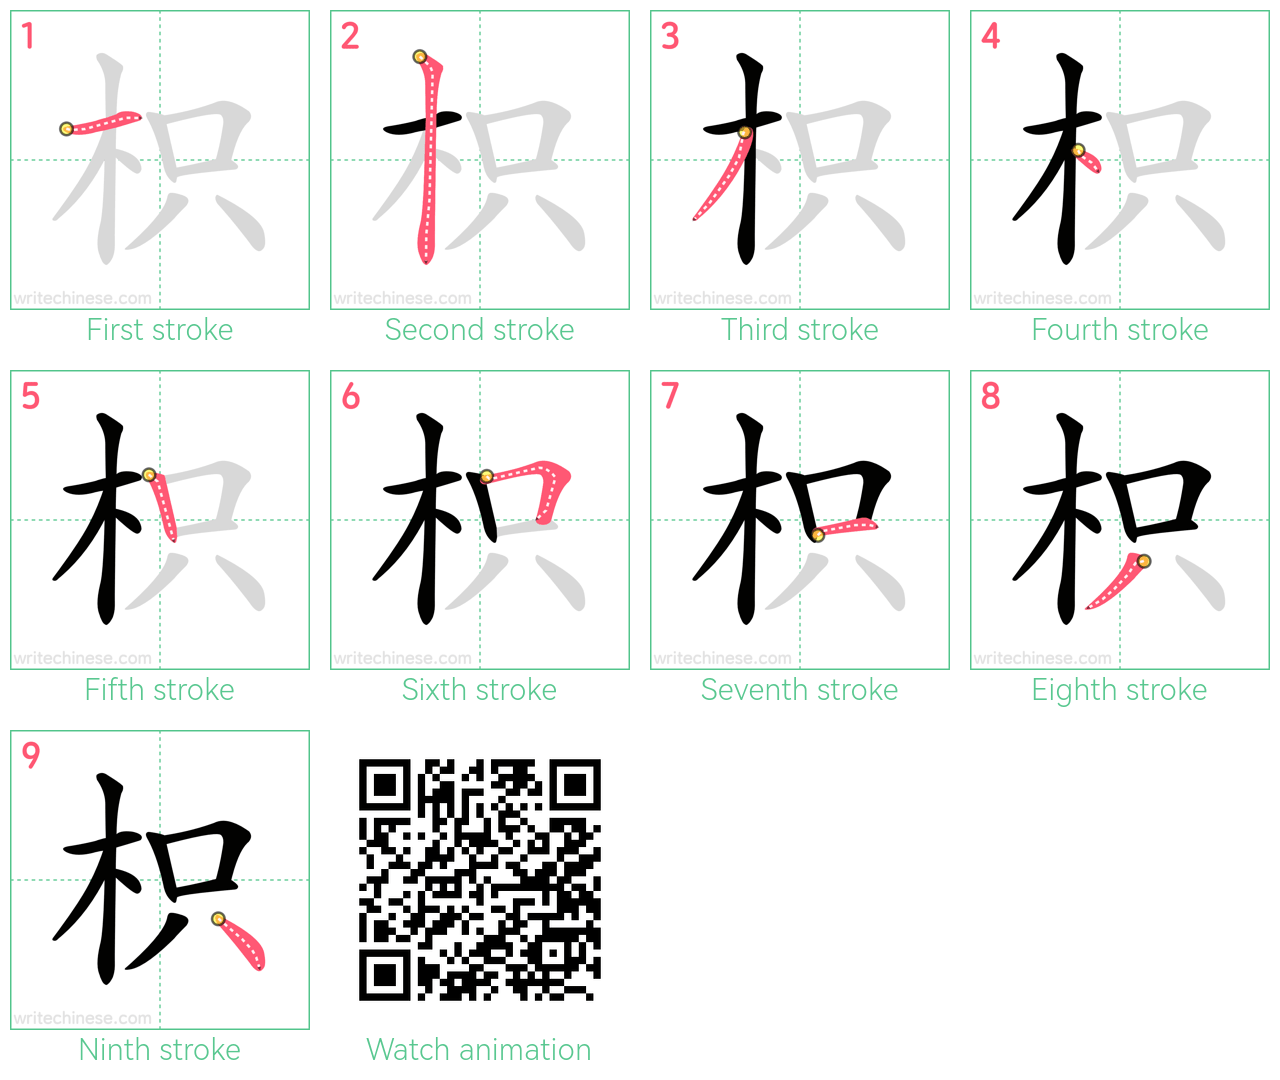 枳 step-by-step stroke order diagrams